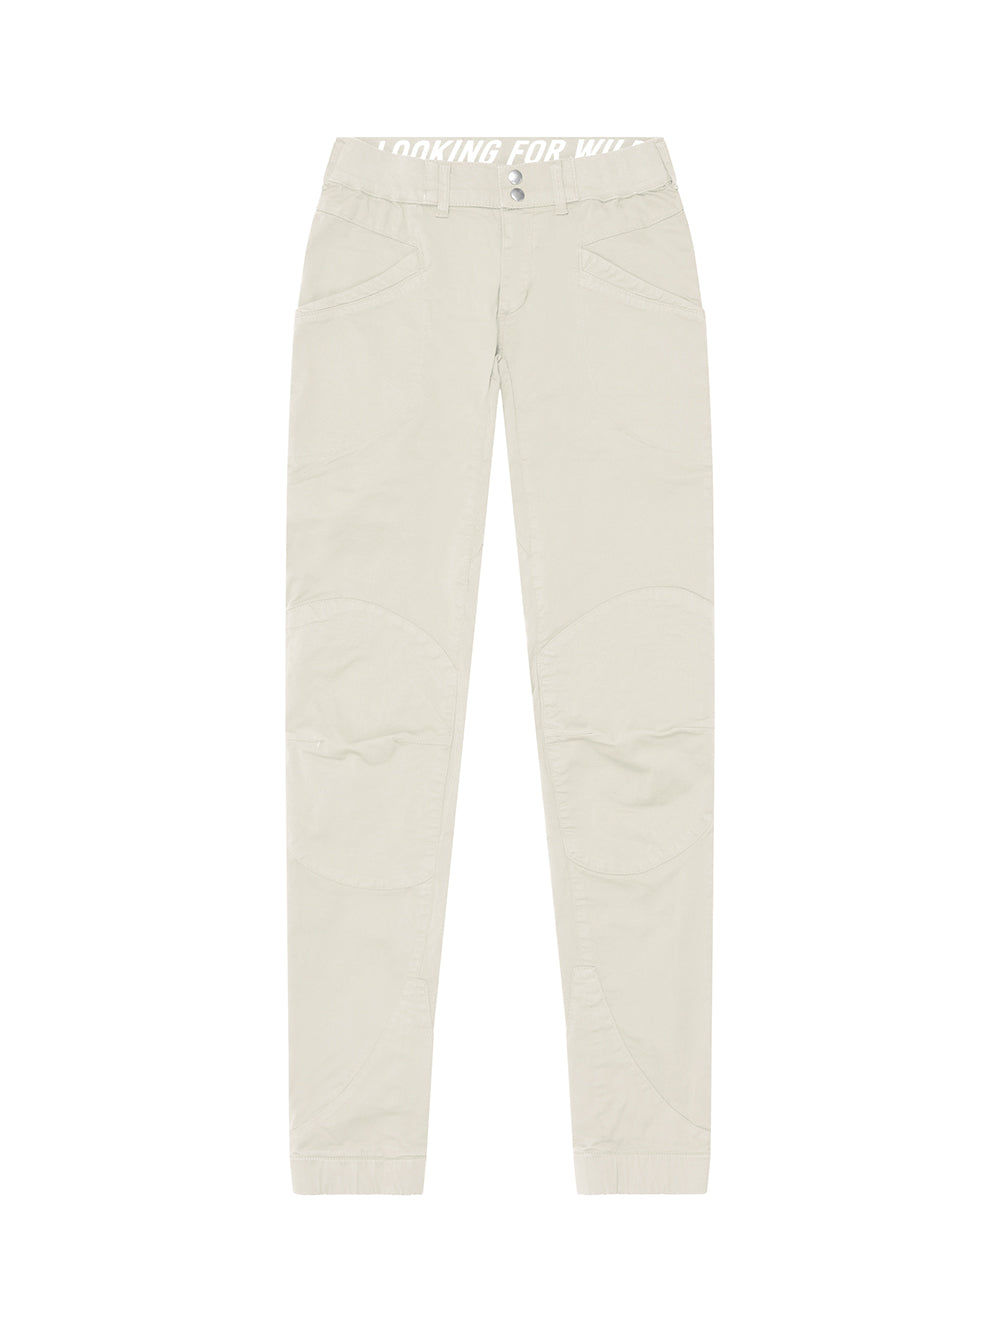 Pantalon Technique Laila Peak BONE WHITE-01